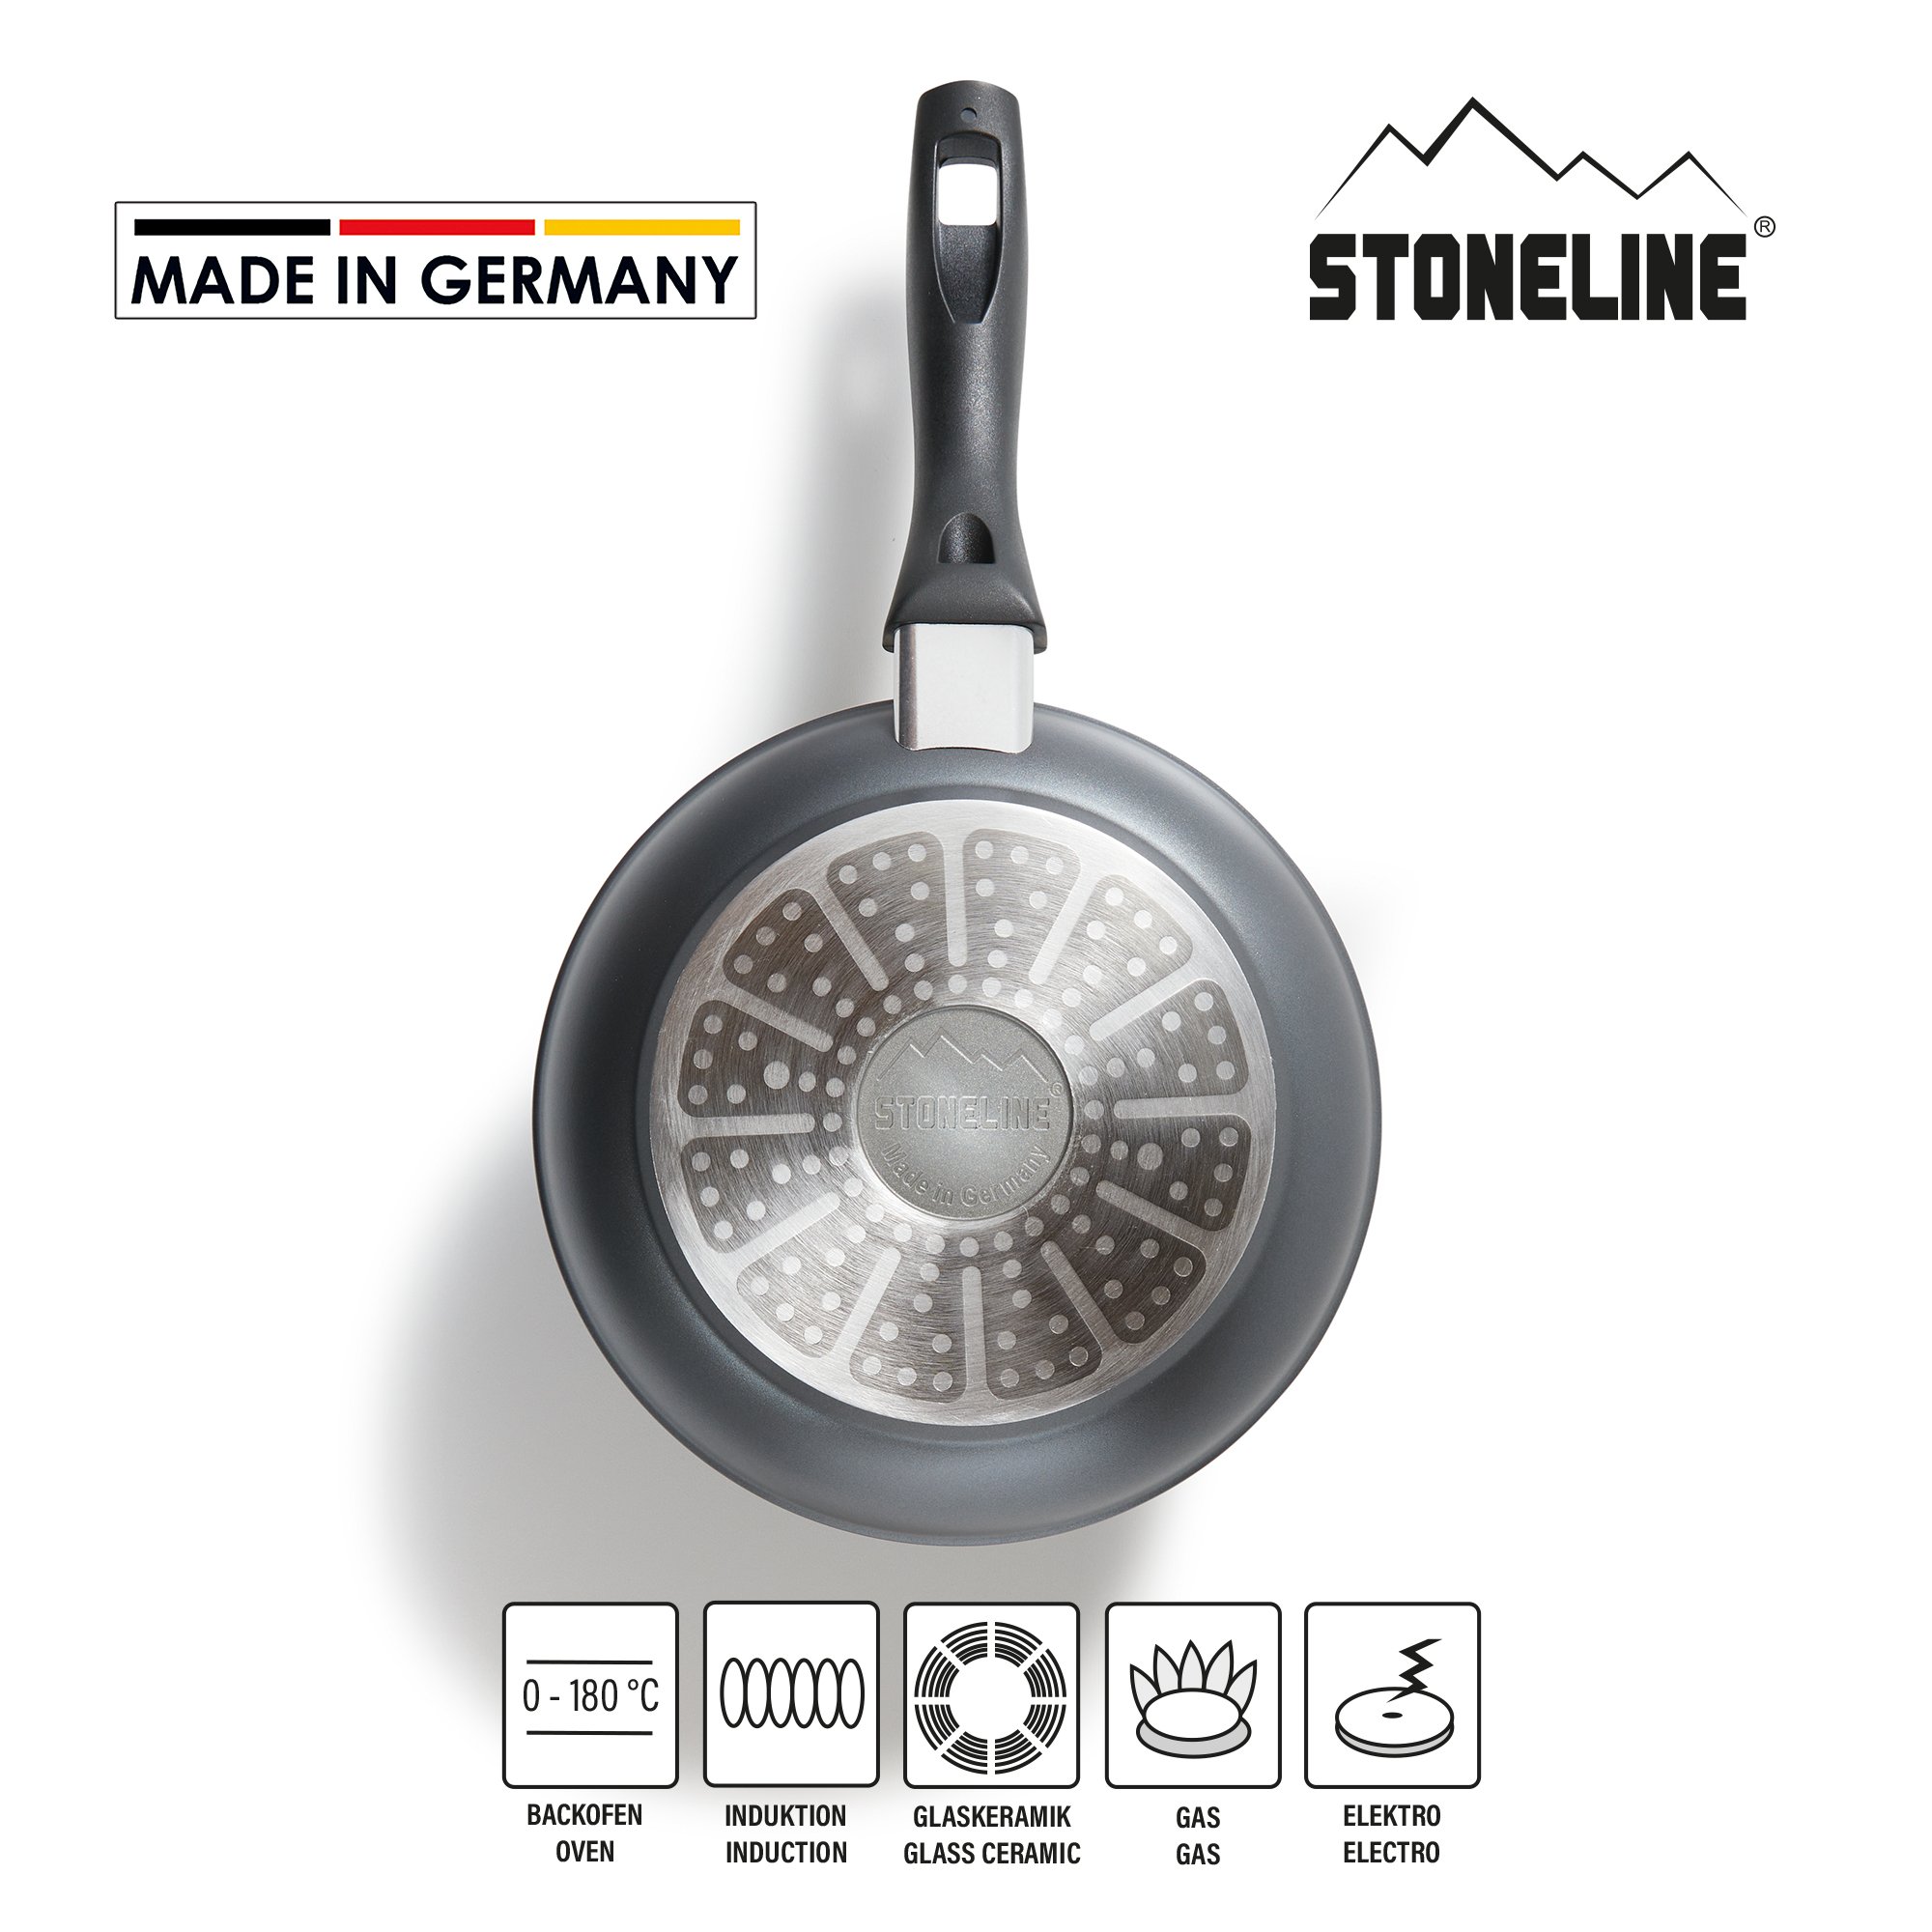 STONELINE® Sartén 20 cm, Made in Germany, con revestimiento antiadherente, apta para inducción